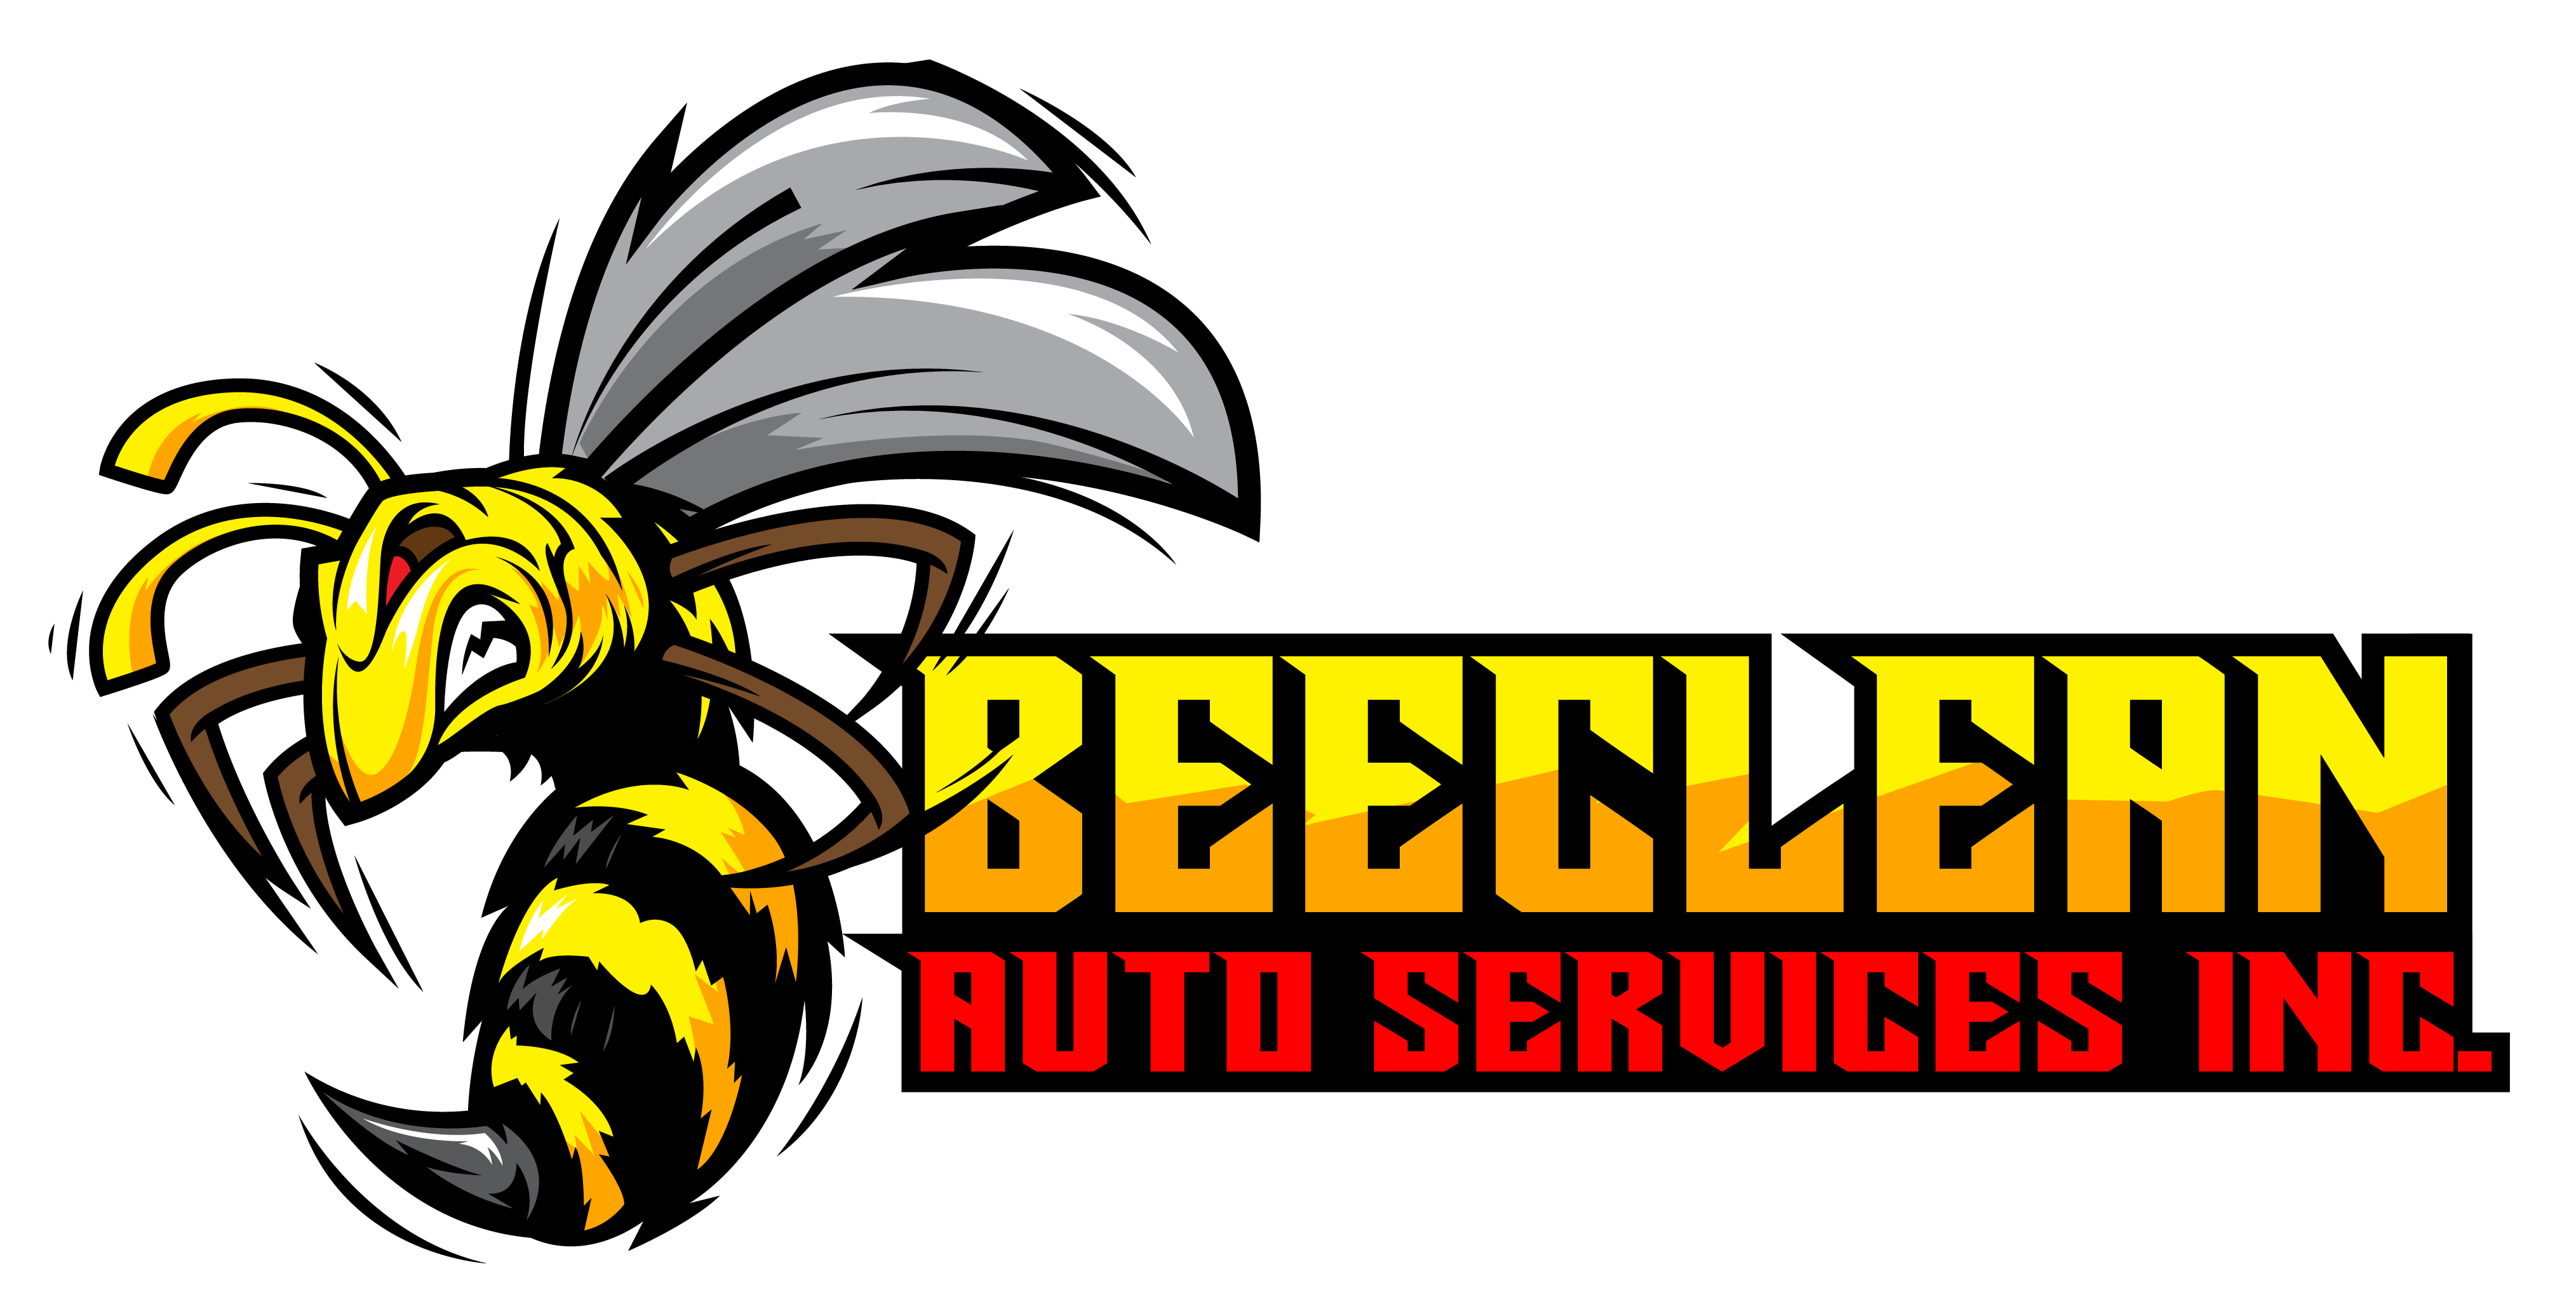 BeeClean Auto Services Logo